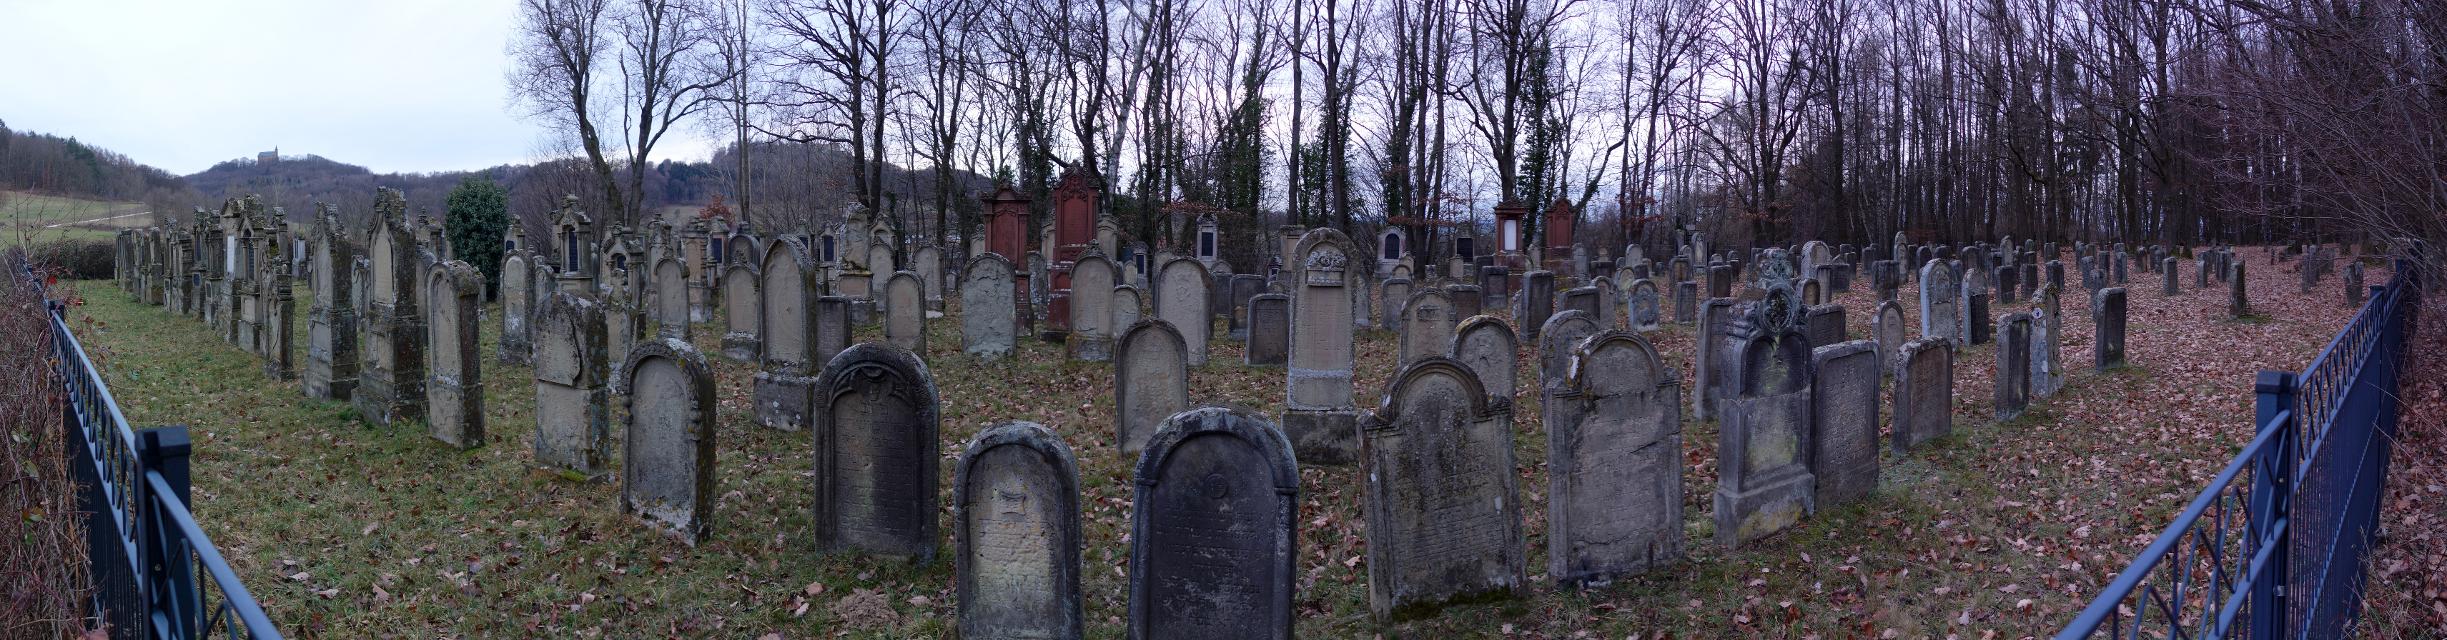 Der Jüdische Friedhof im Wald zwischen Zeckendorf und Demmelsdorf wurde bereits um 1617 errichtet. Heute sind noch etwa 598 Grabsteine vorhanden, die von 1991 bis 1993 dokumentiert wurden. Der älteste Grabstein ist von 1637.Damals setzten die Bamberger Juden ihre Verstorbenen hier bei. ...
                 title=